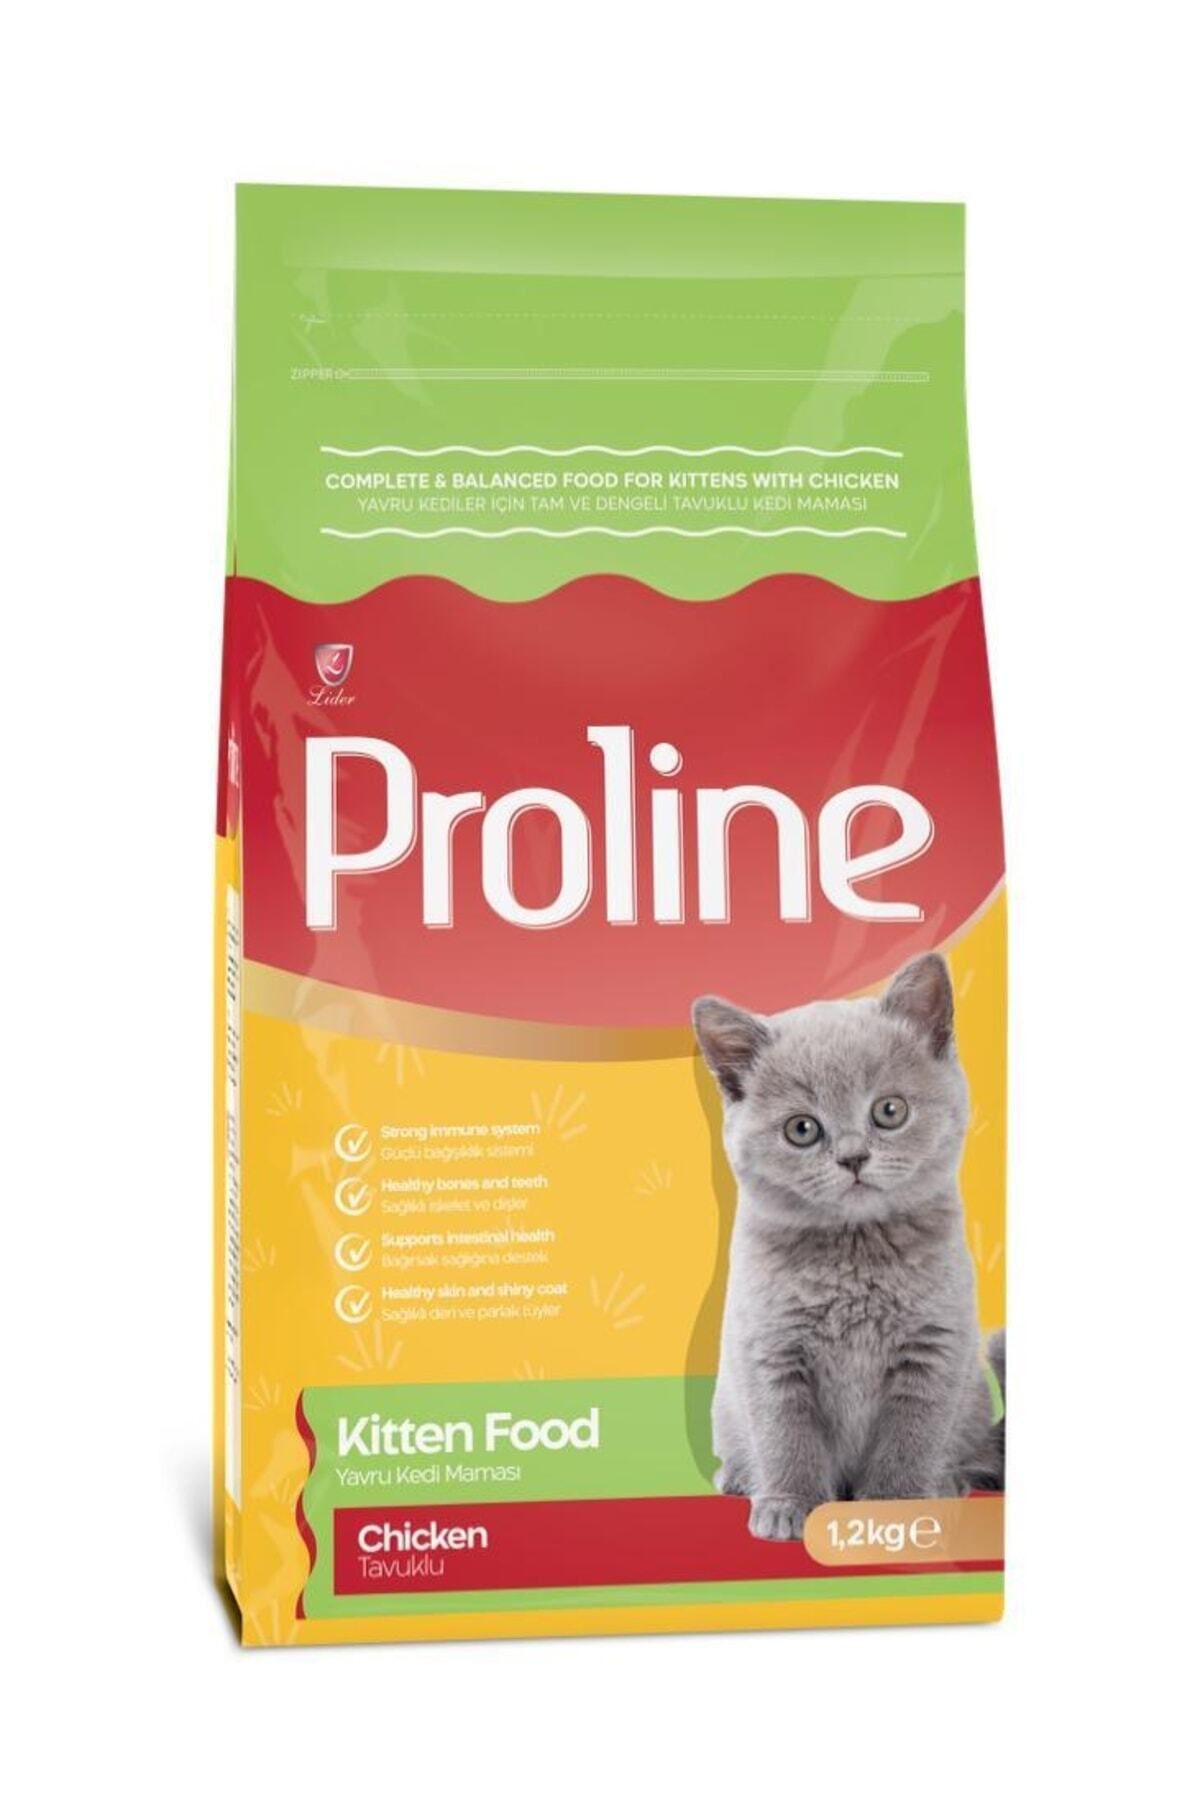 Pro Line Proline Kıtten Yavru Kedi Maması 1.2kg